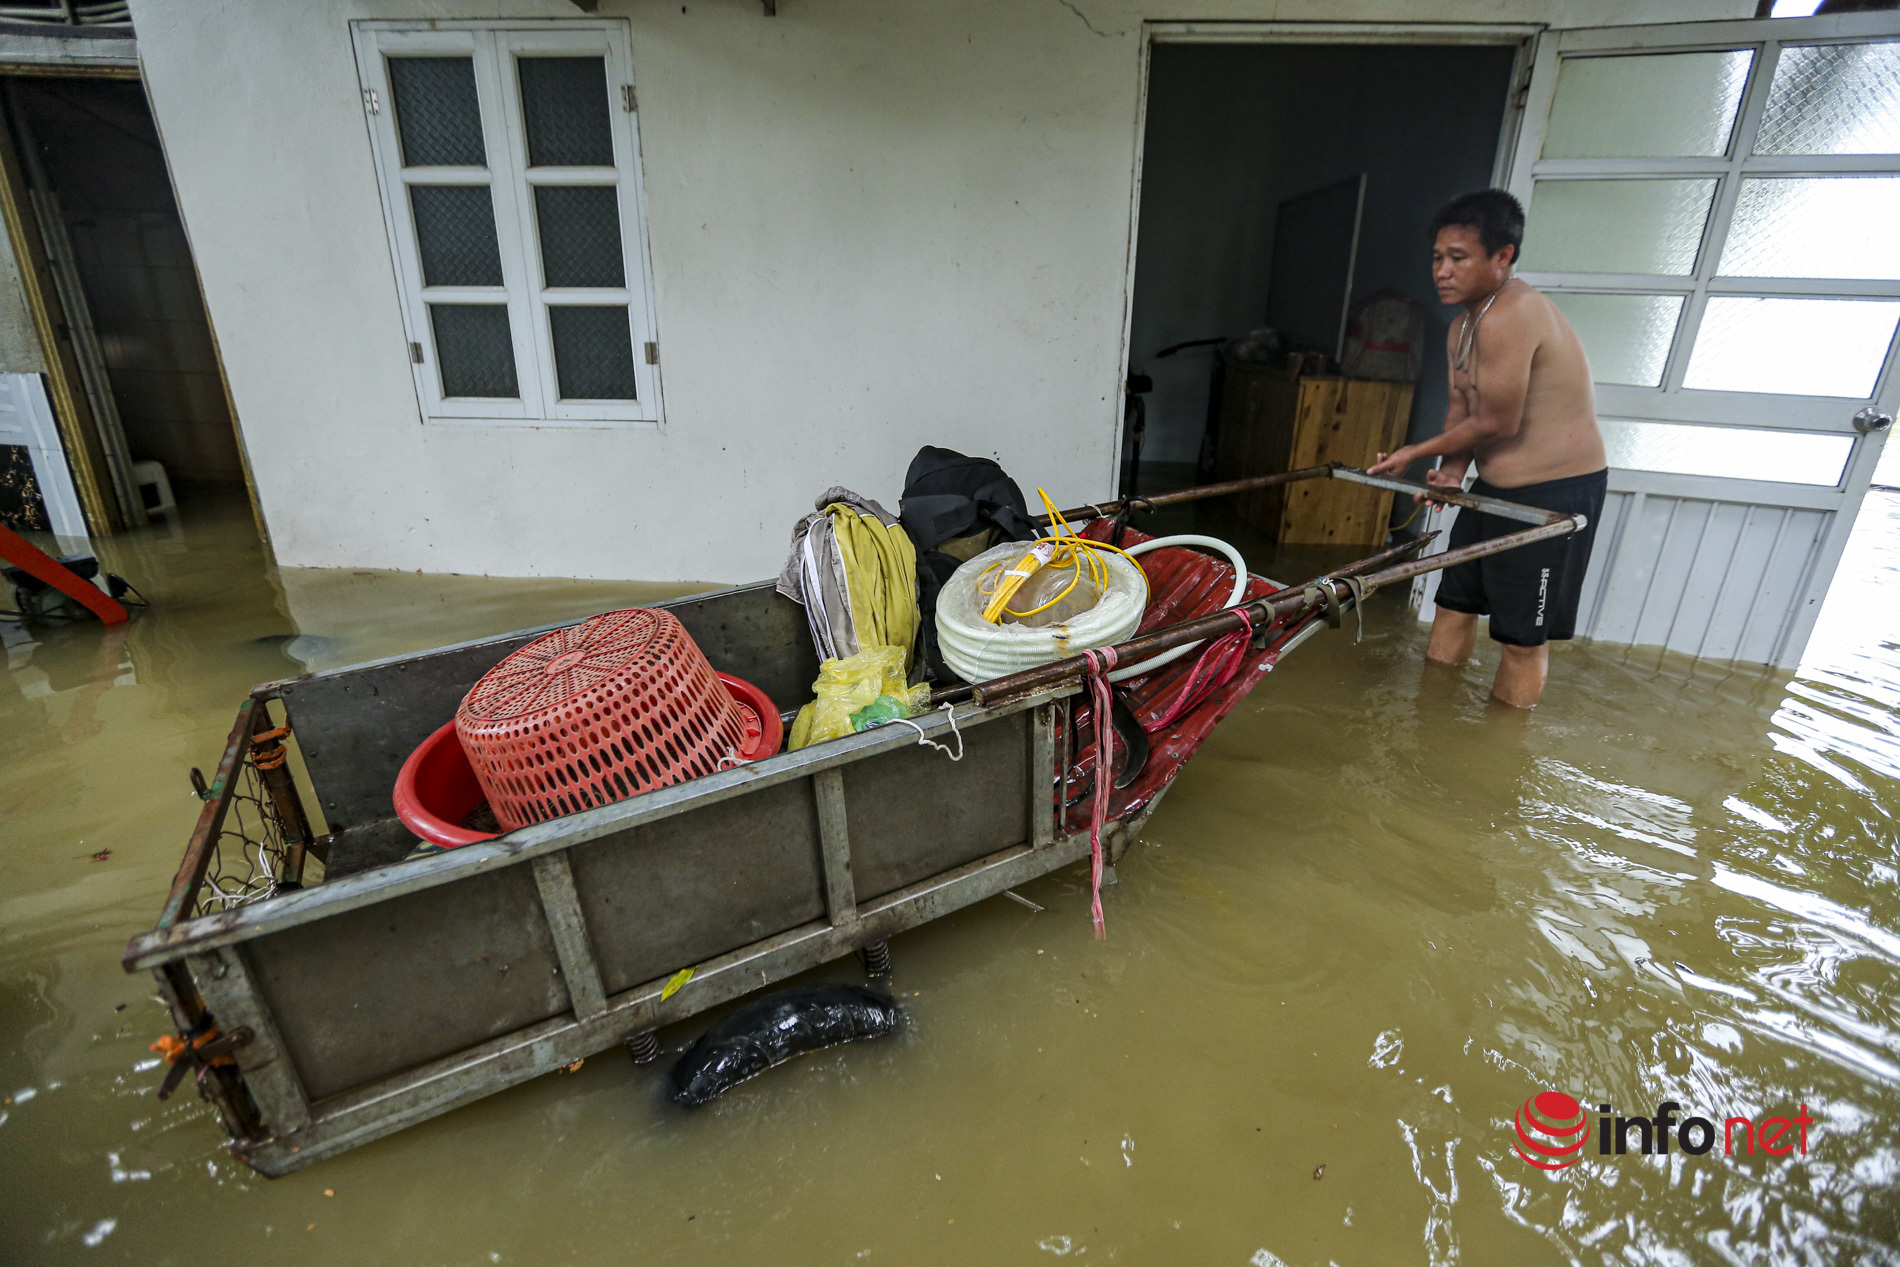 Nước sông lên cao, hàng chục nhà dân ngoại ô Hà Nội chìm trong biển nước